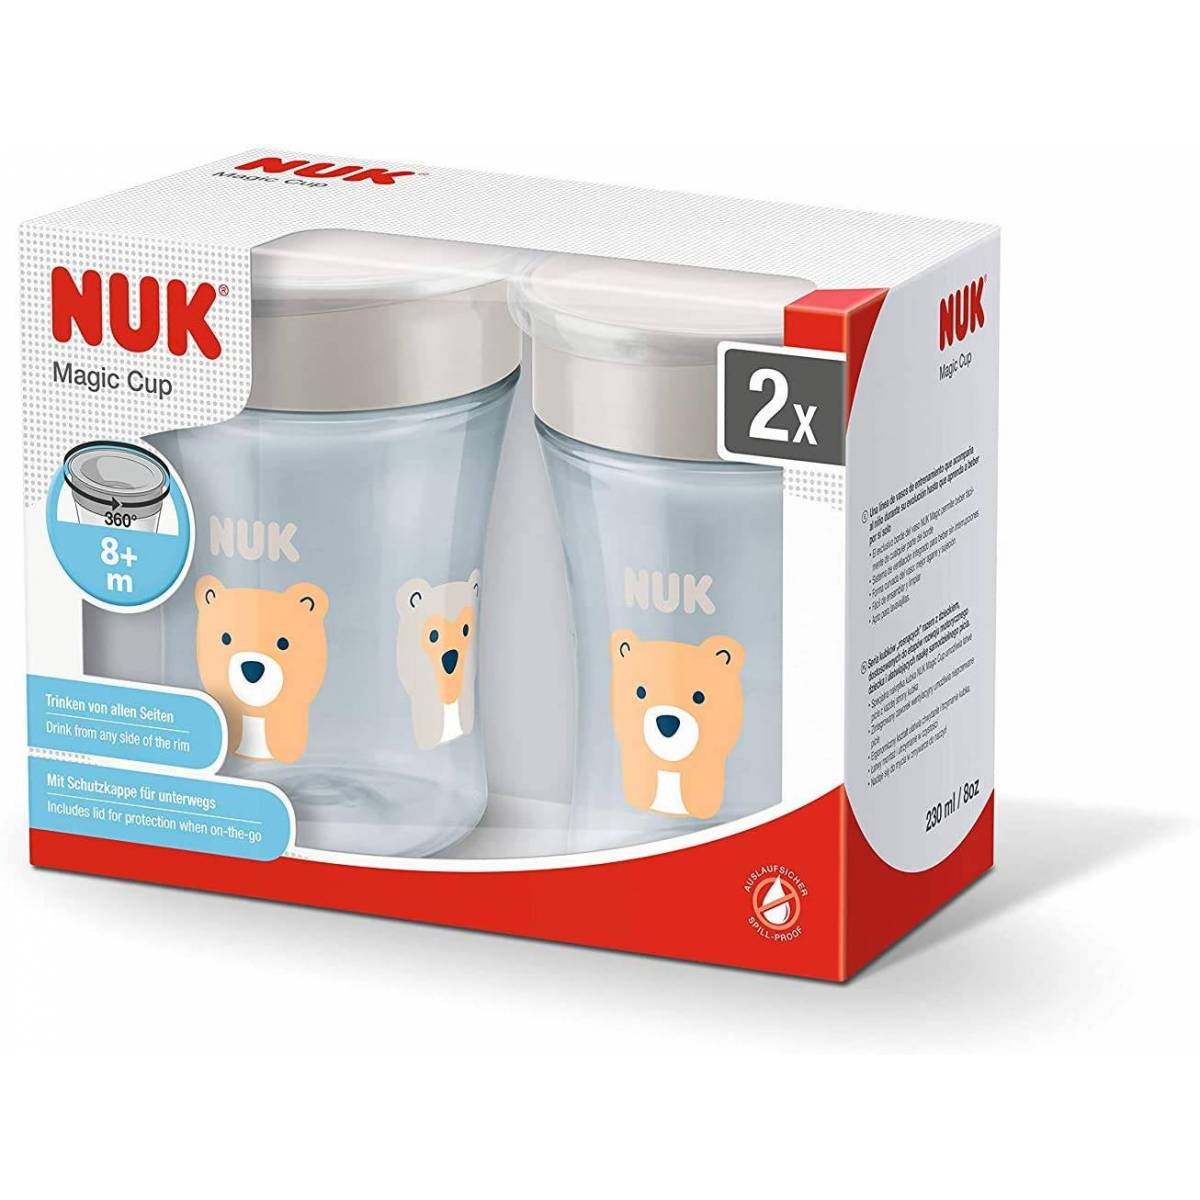 NUK Magic Cup set de tasse antifuite, rebord antifuite 360°, à partir de 8 mois, 230 ml, sans BPA, tigre et ours